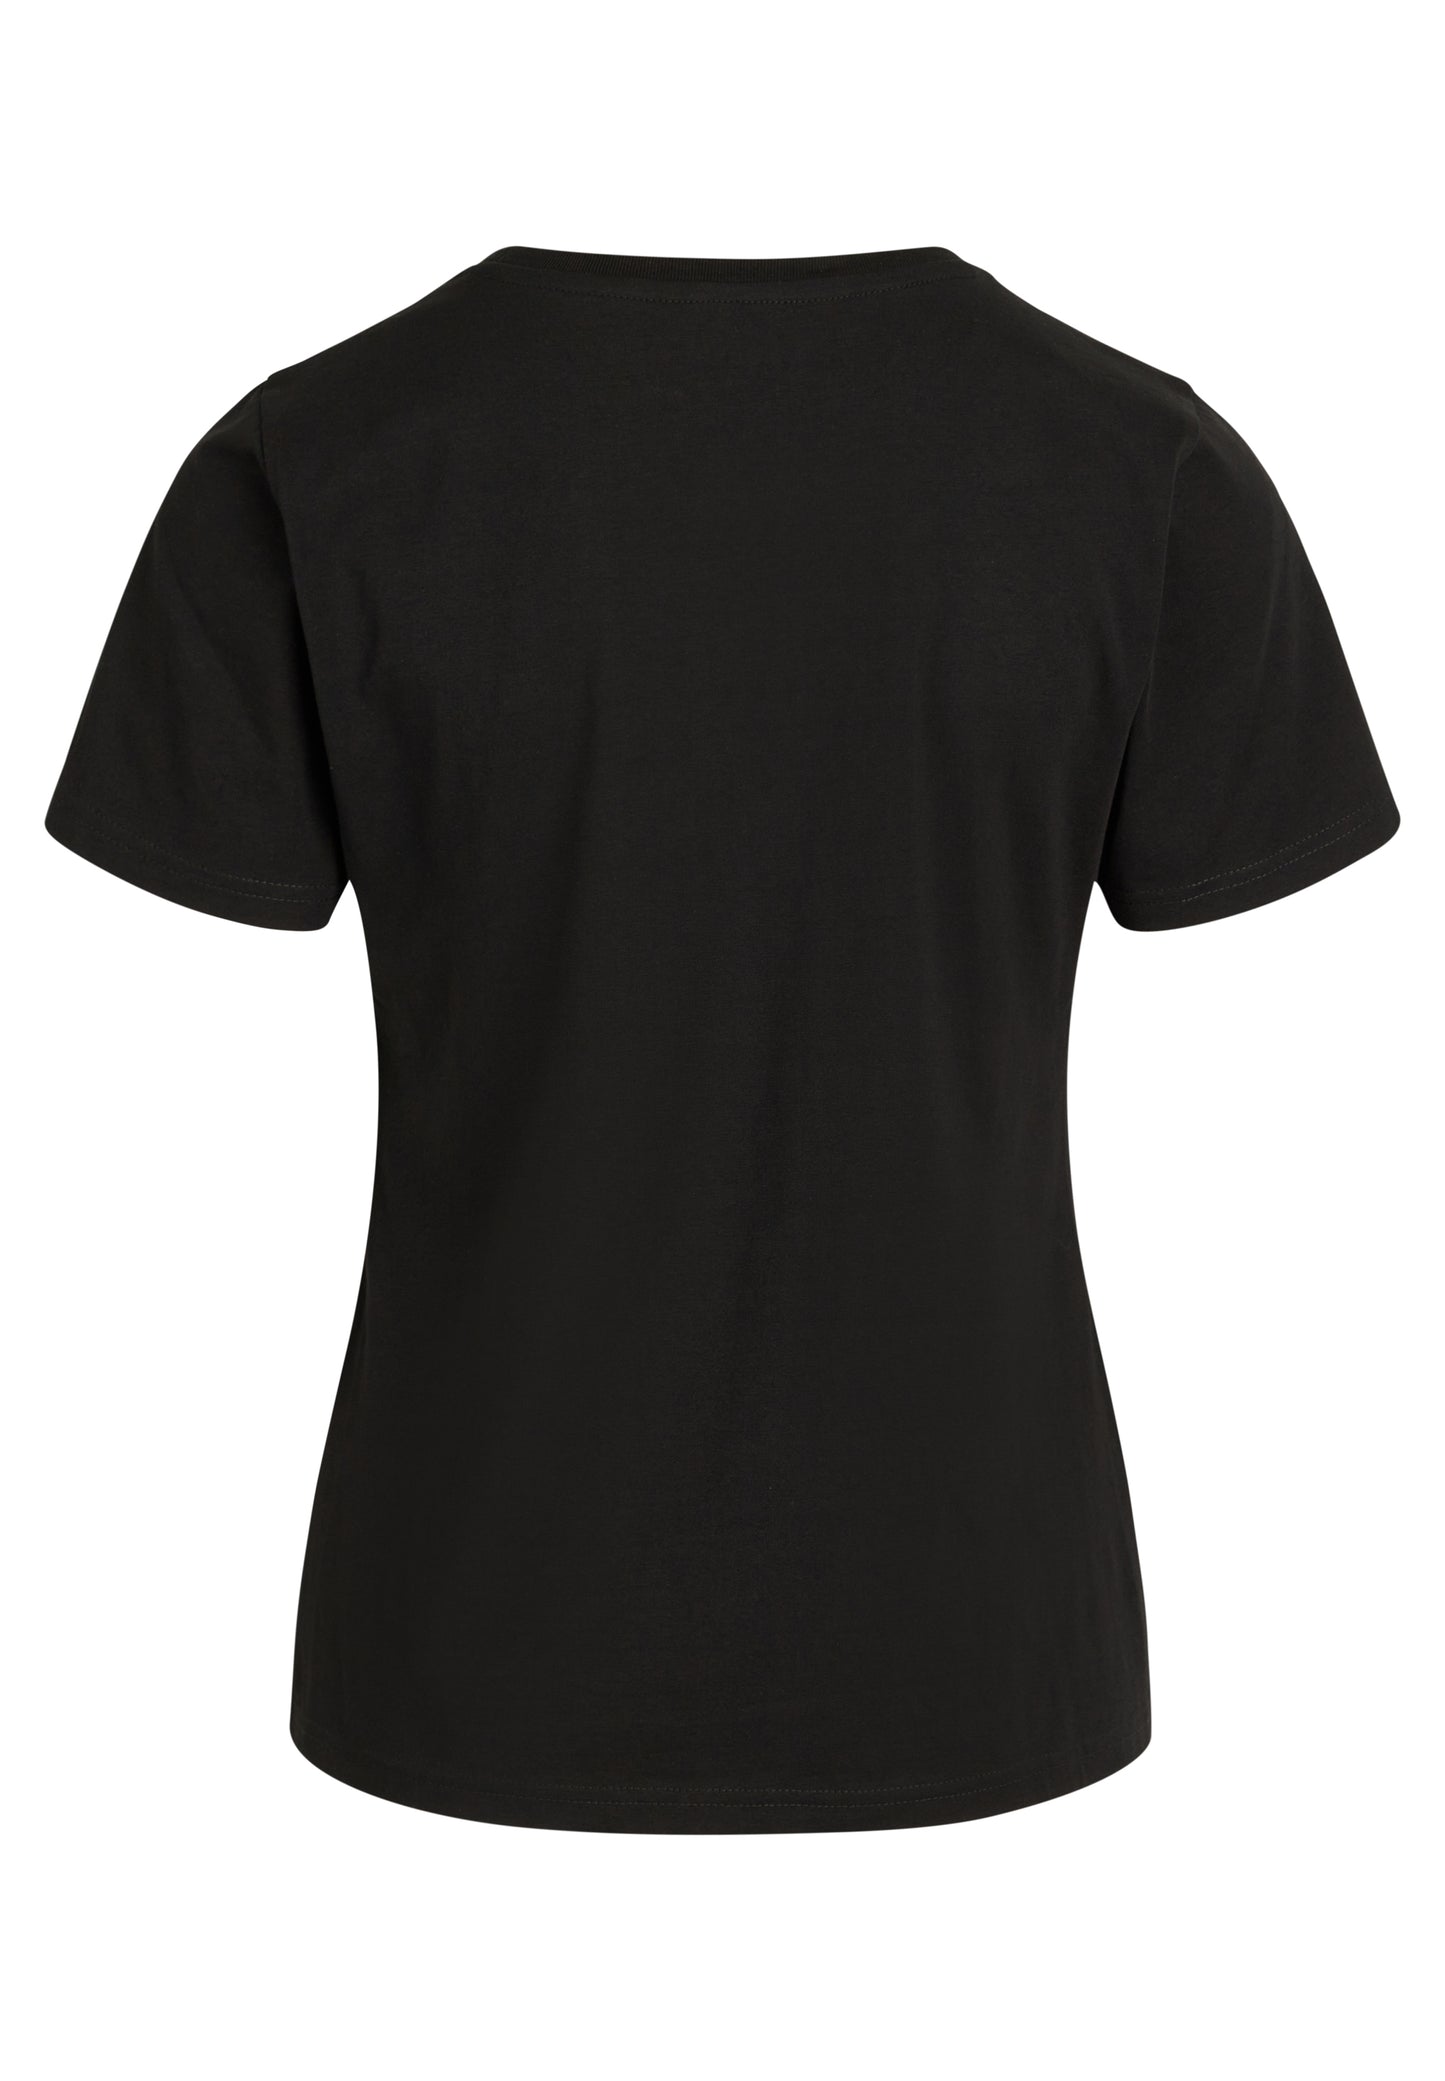 NORVIG O-Neck T-shirt til kvinder sort